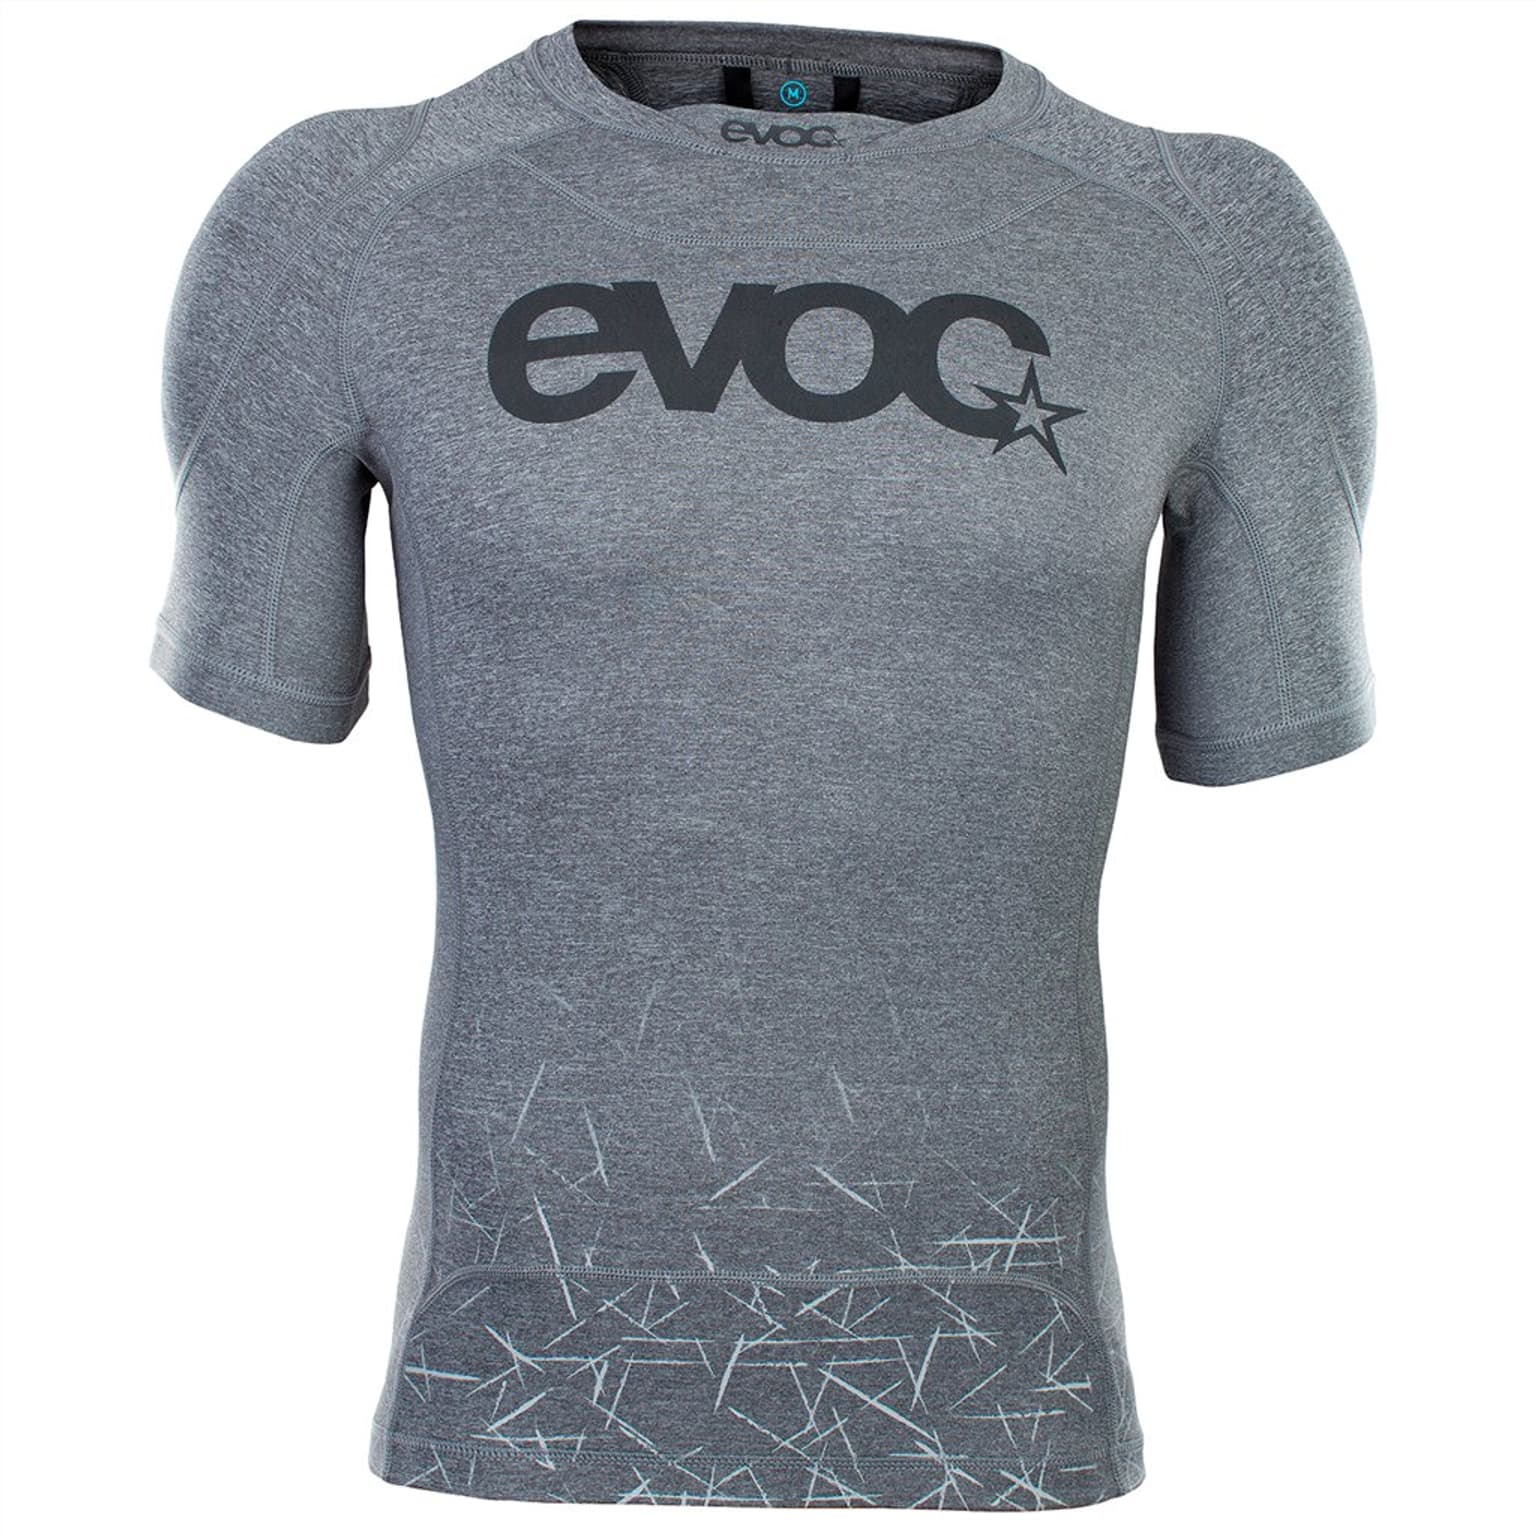 Evoc Evoc Enduro Shirt Protections gris 1